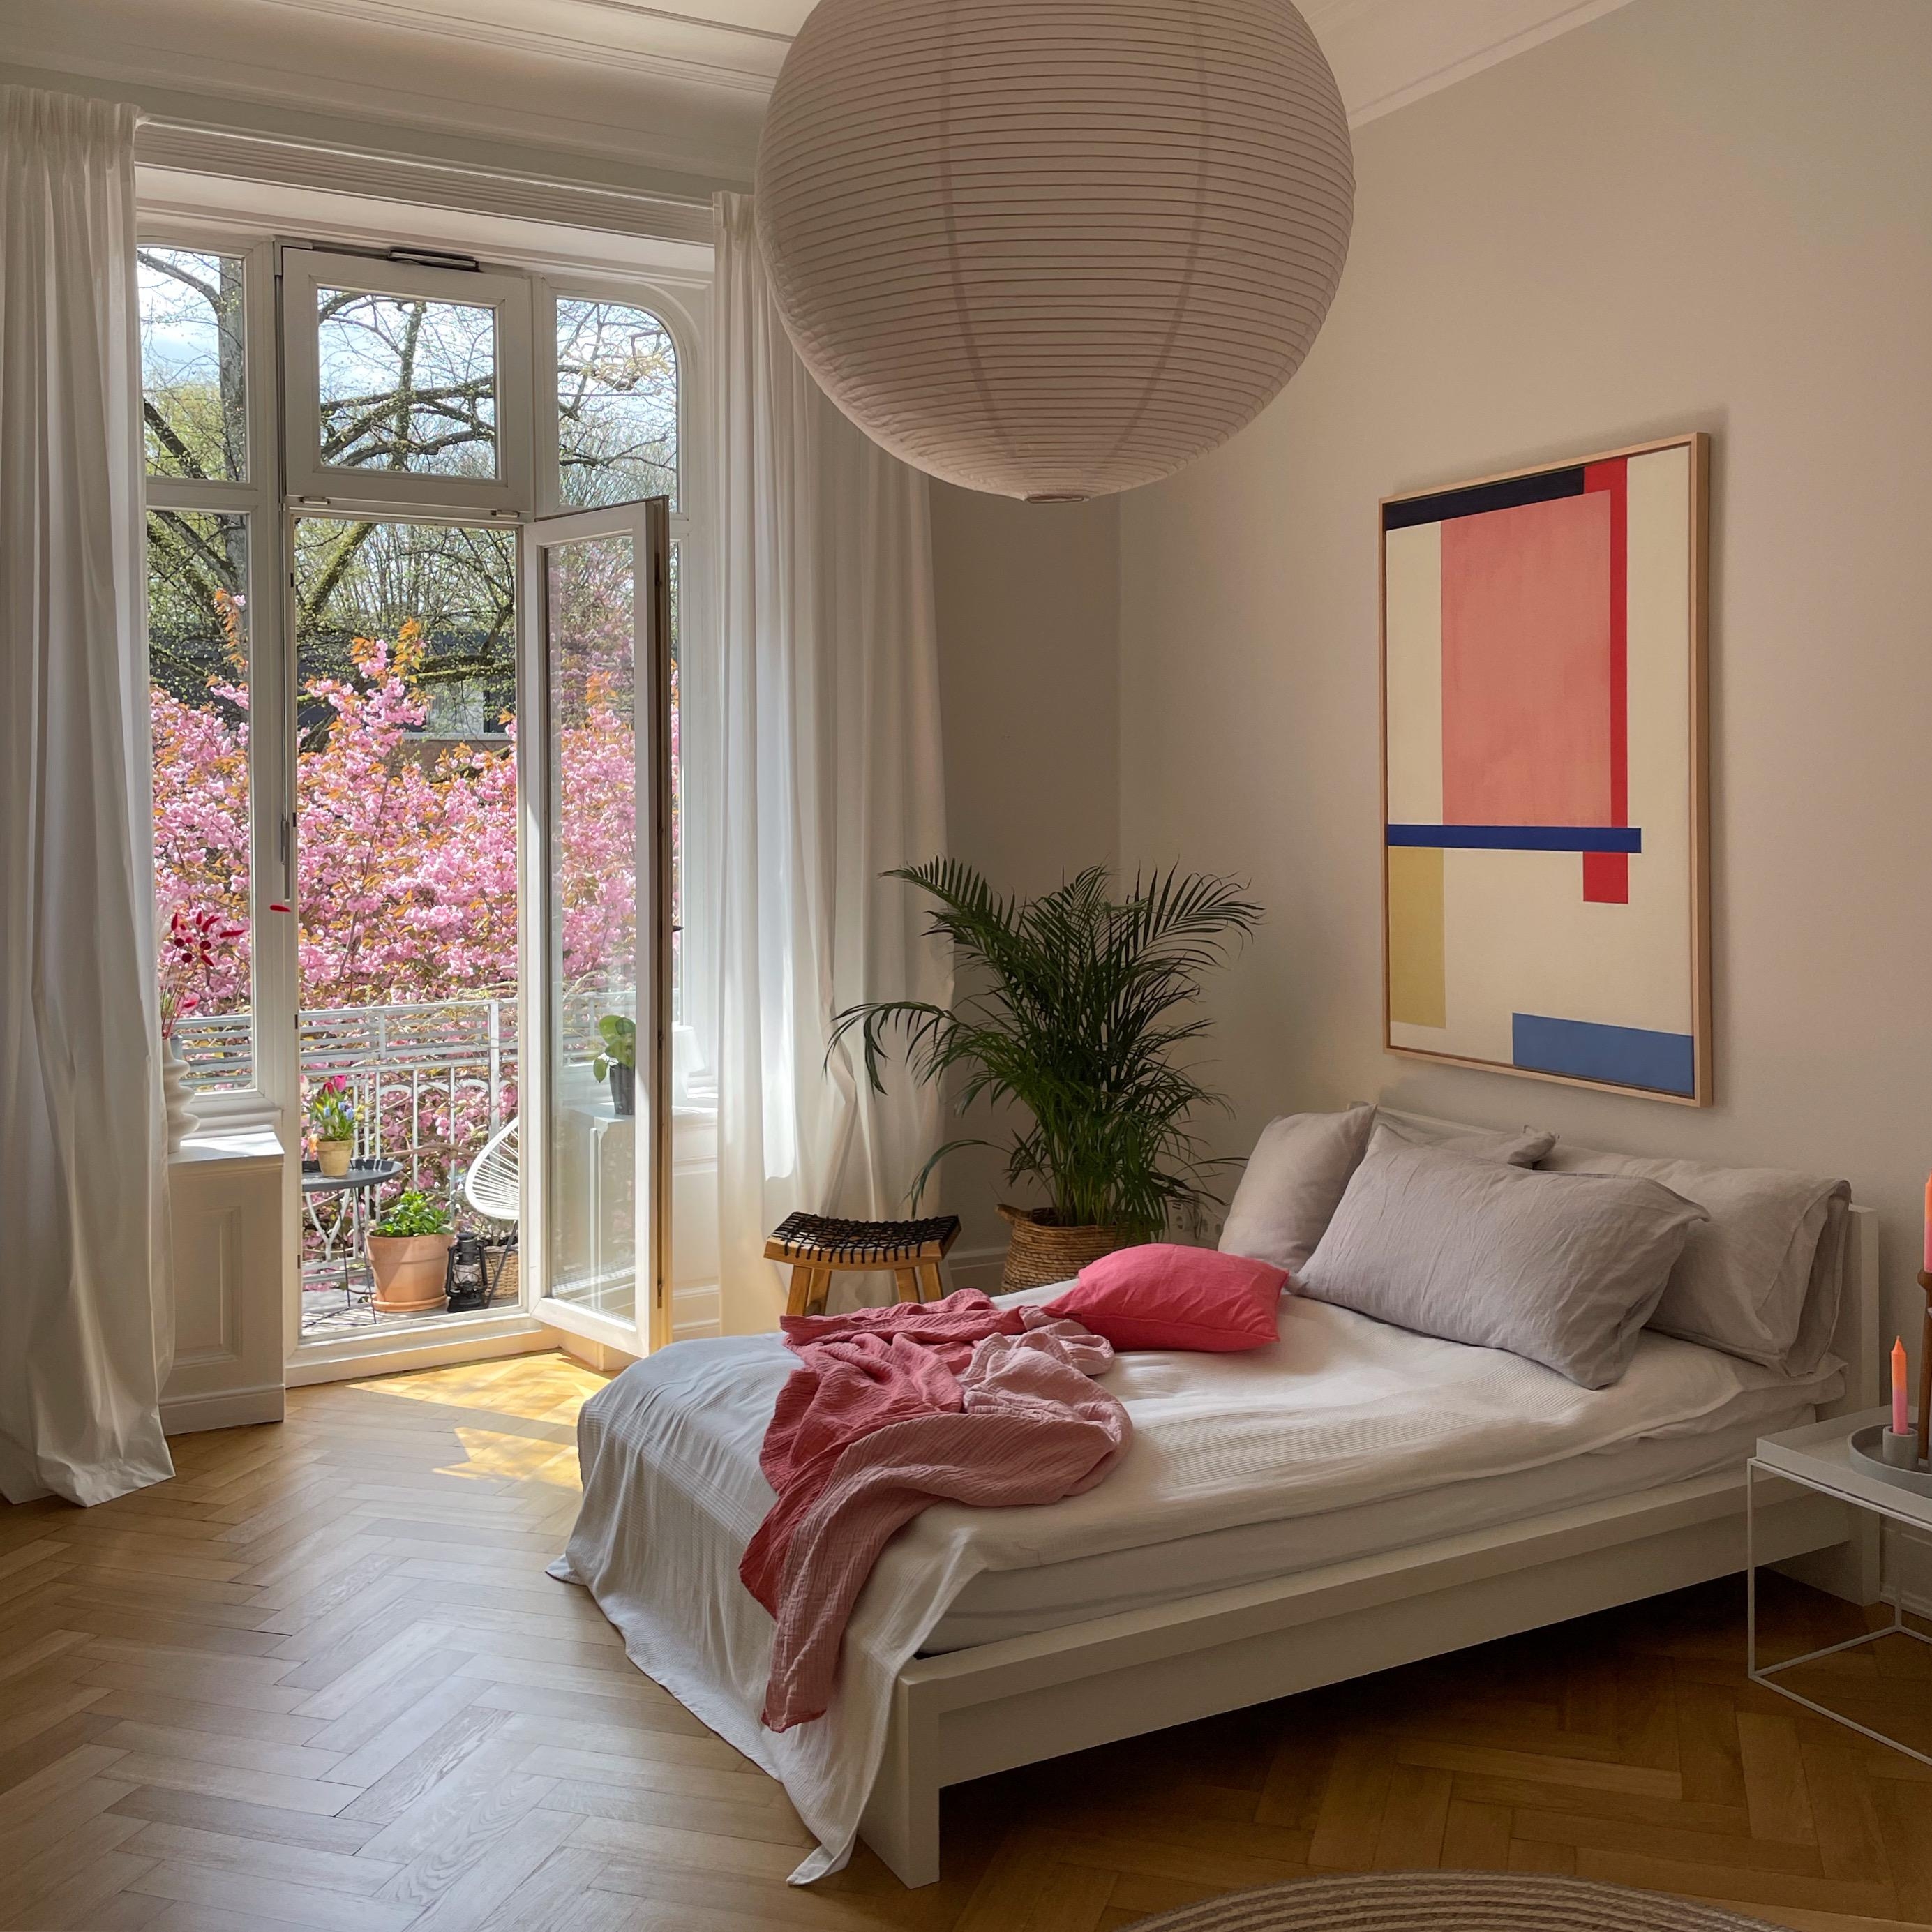 #cherryblossom #kirschbaumblüte #schlafzimmer #bedroom #colourfulliving #wohnen #couchstyle 